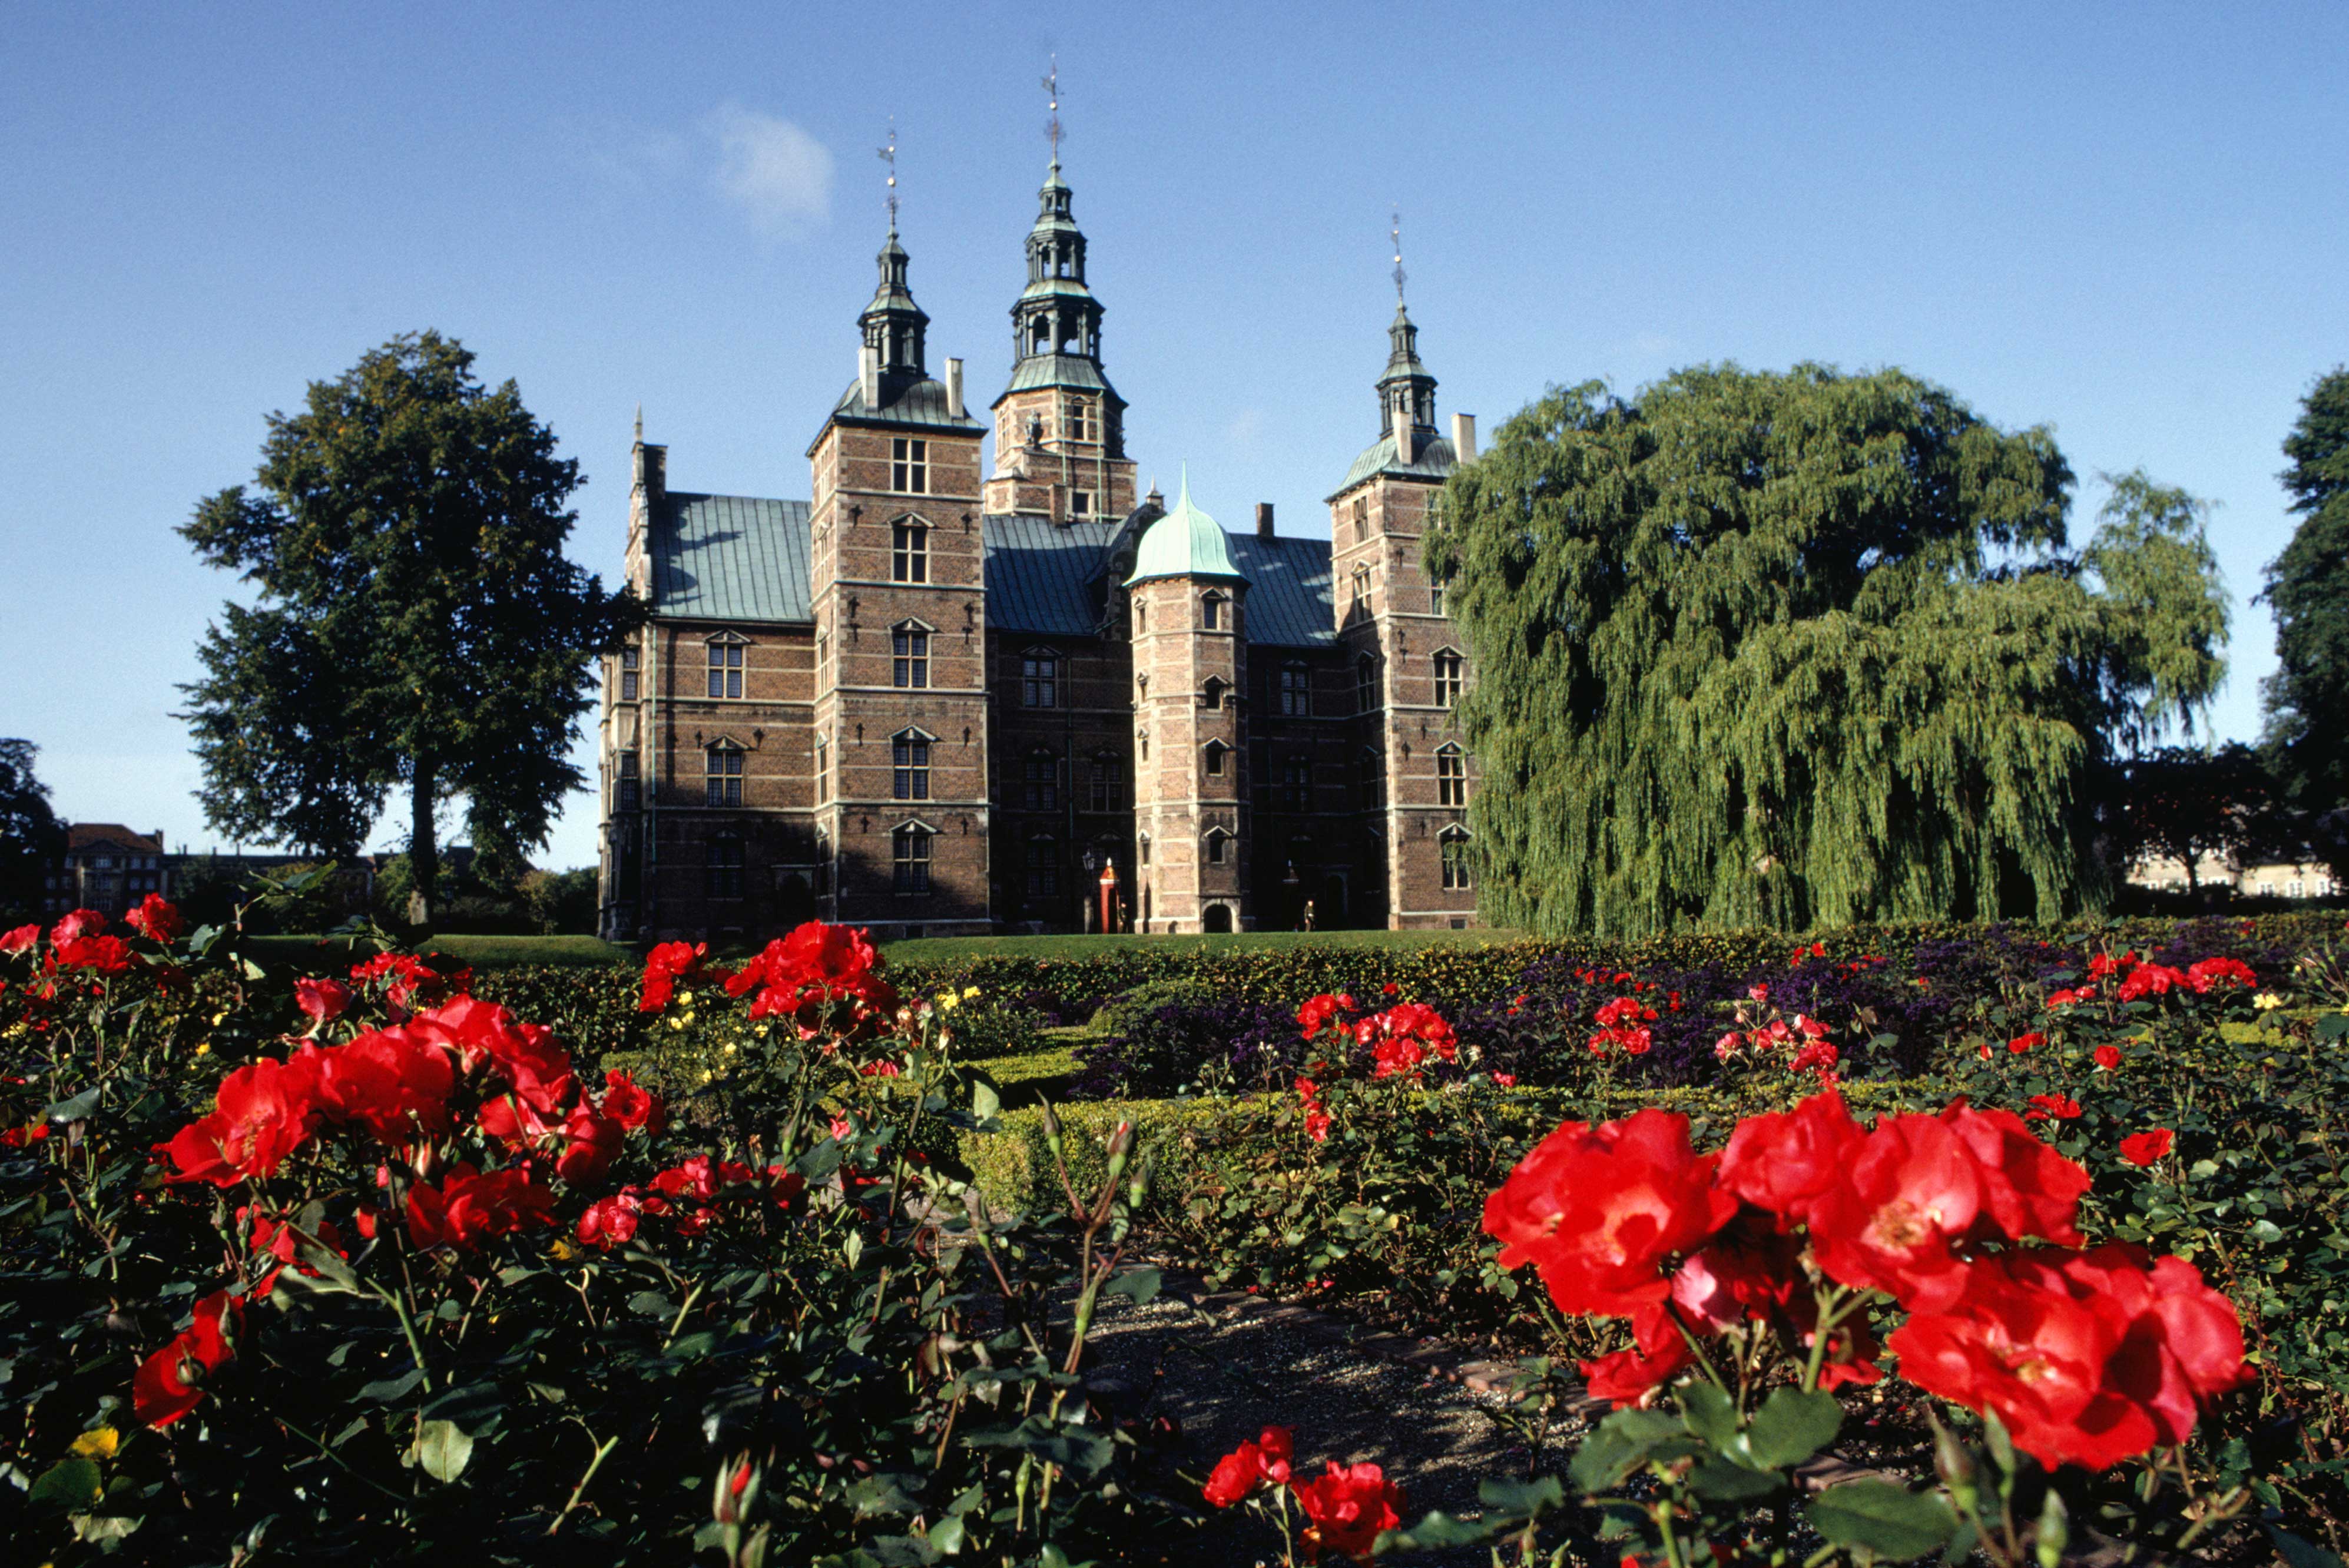 Rosenborg Castle Denmark-2